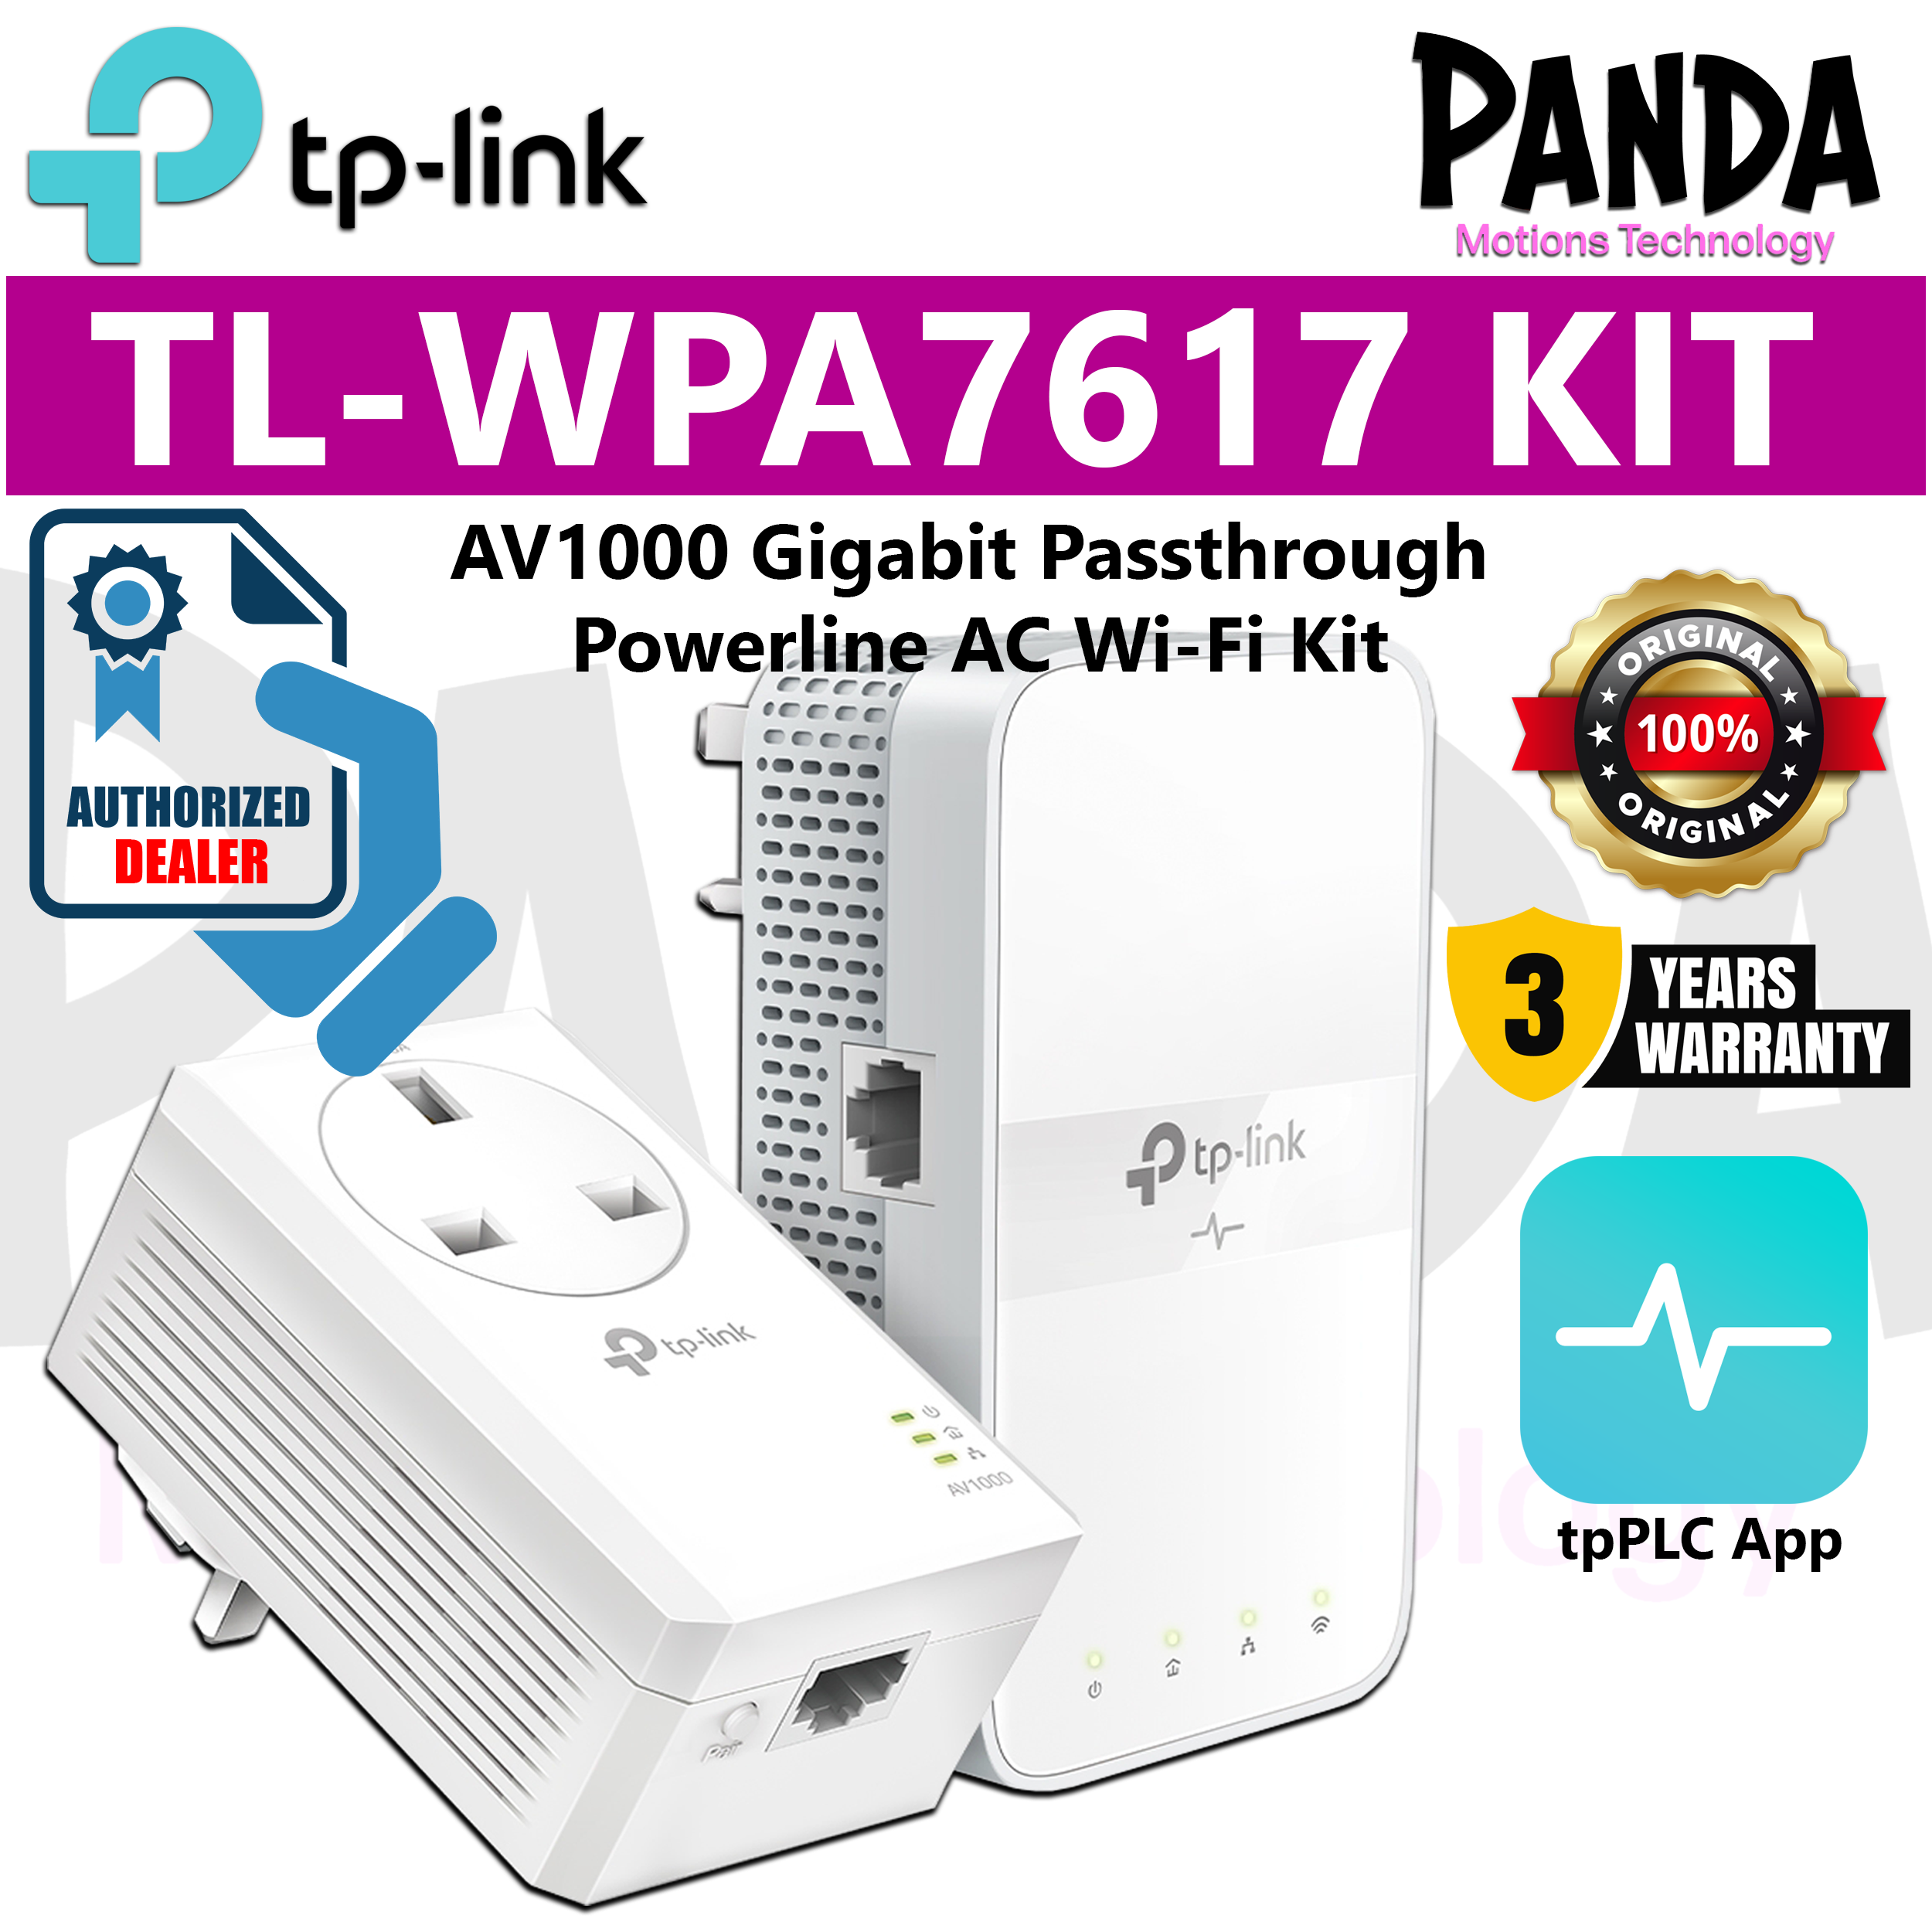 TP-Link AV1000 Gigabit Passthrough Powerline ac Wi-Fi Kit (TL